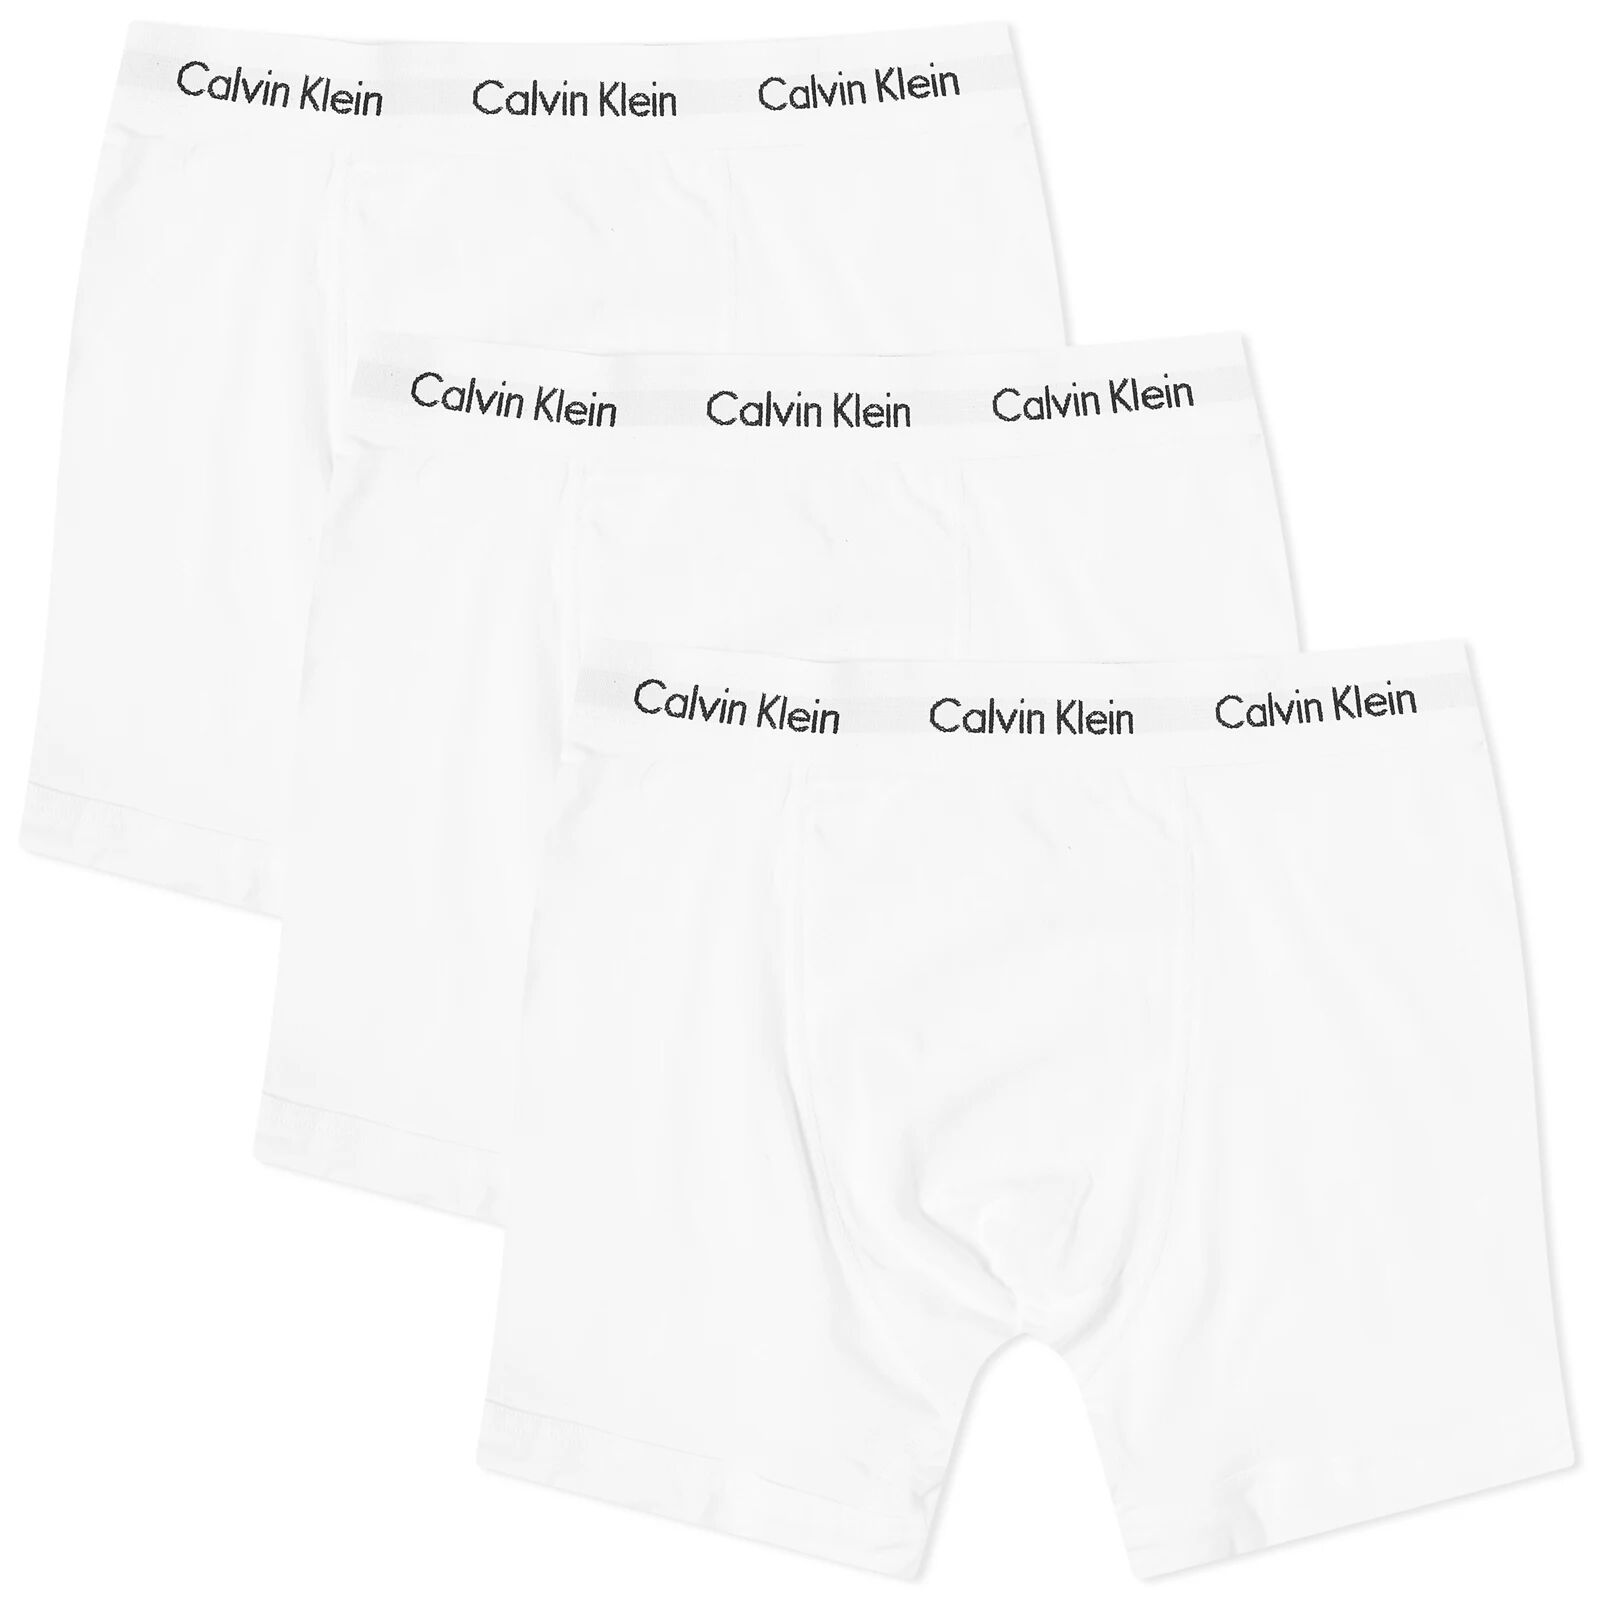 Calvin Klein Men's CK Underwear Boxer Brief - 3 Pack in White, Size Large